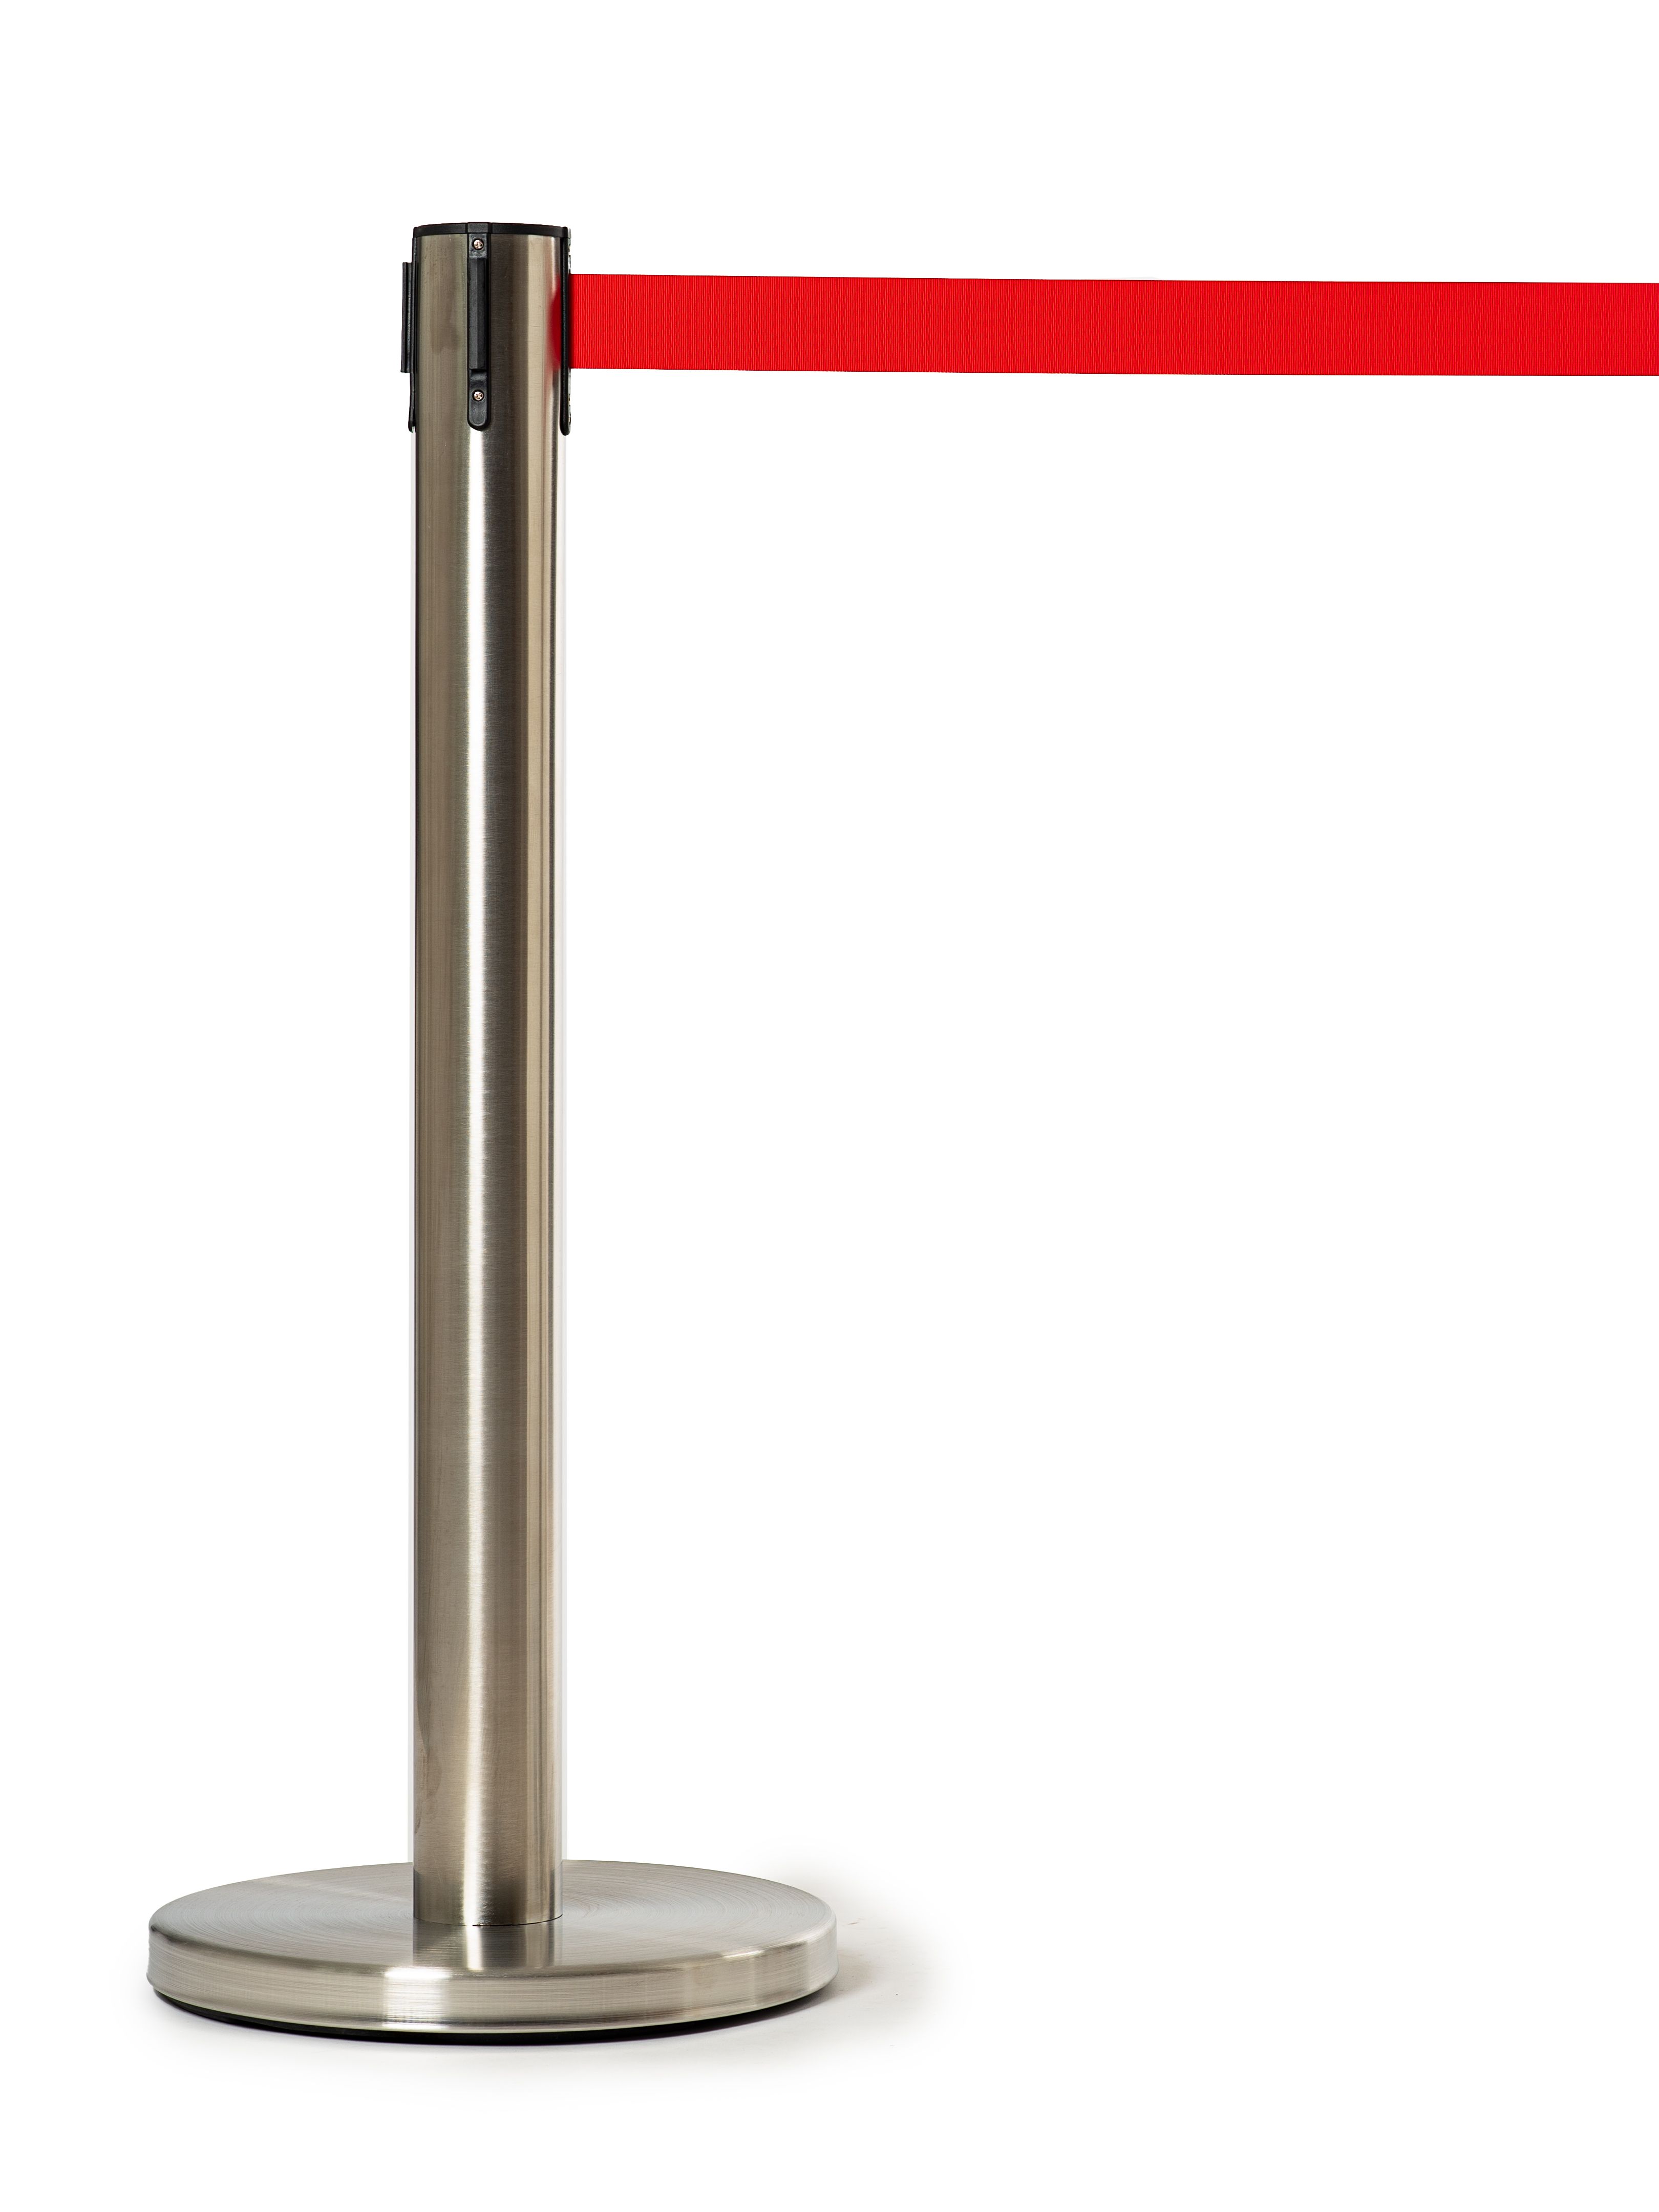 Мобильная стойка с красной лентой 5 метров мобильная стойка ограждения с вытяжной черной лентой 5 метров 15 1 16